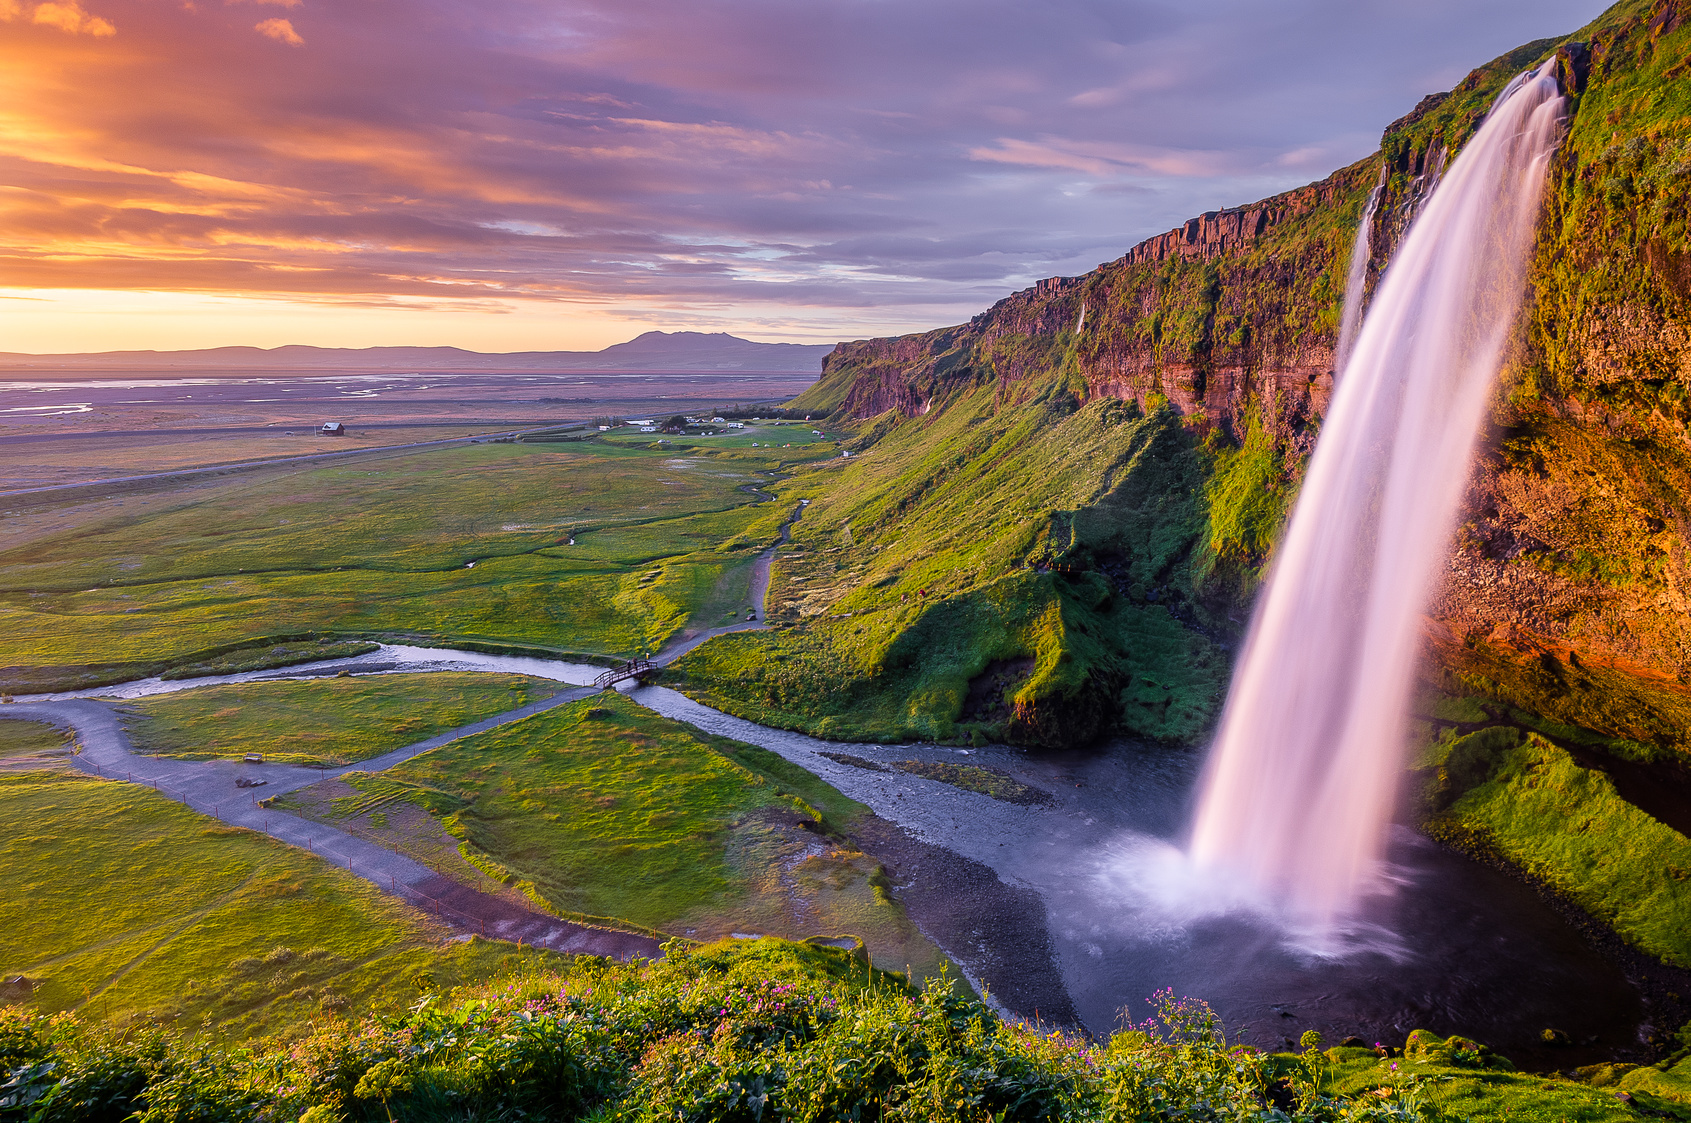 Izlandi utazások - OTP Travel Utazási Iroda